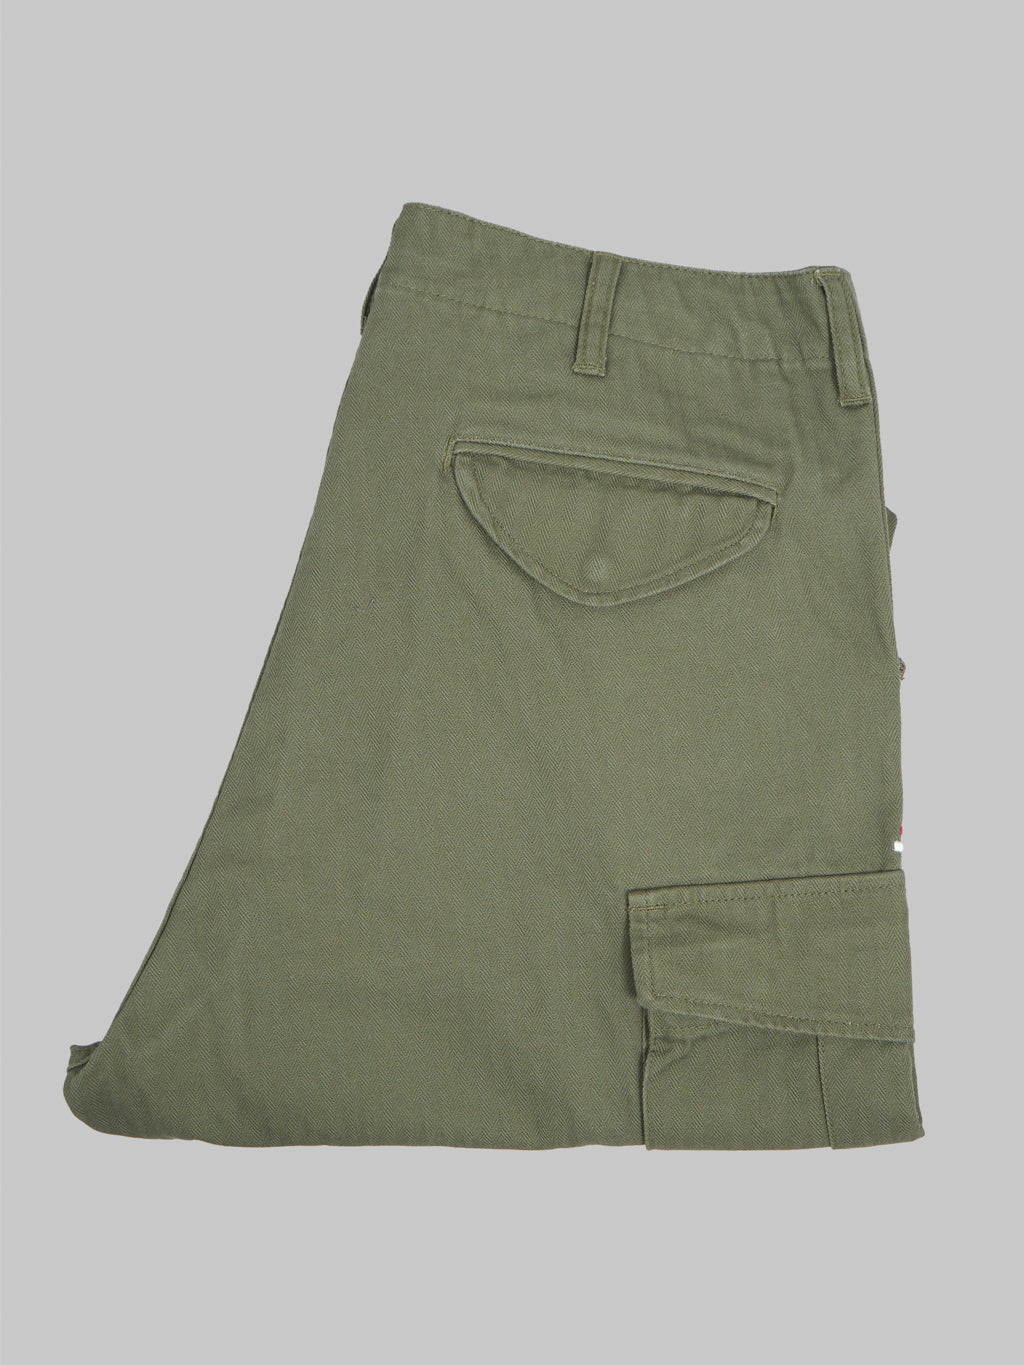 Tanuki Herringbone M-65 Pants Army Green